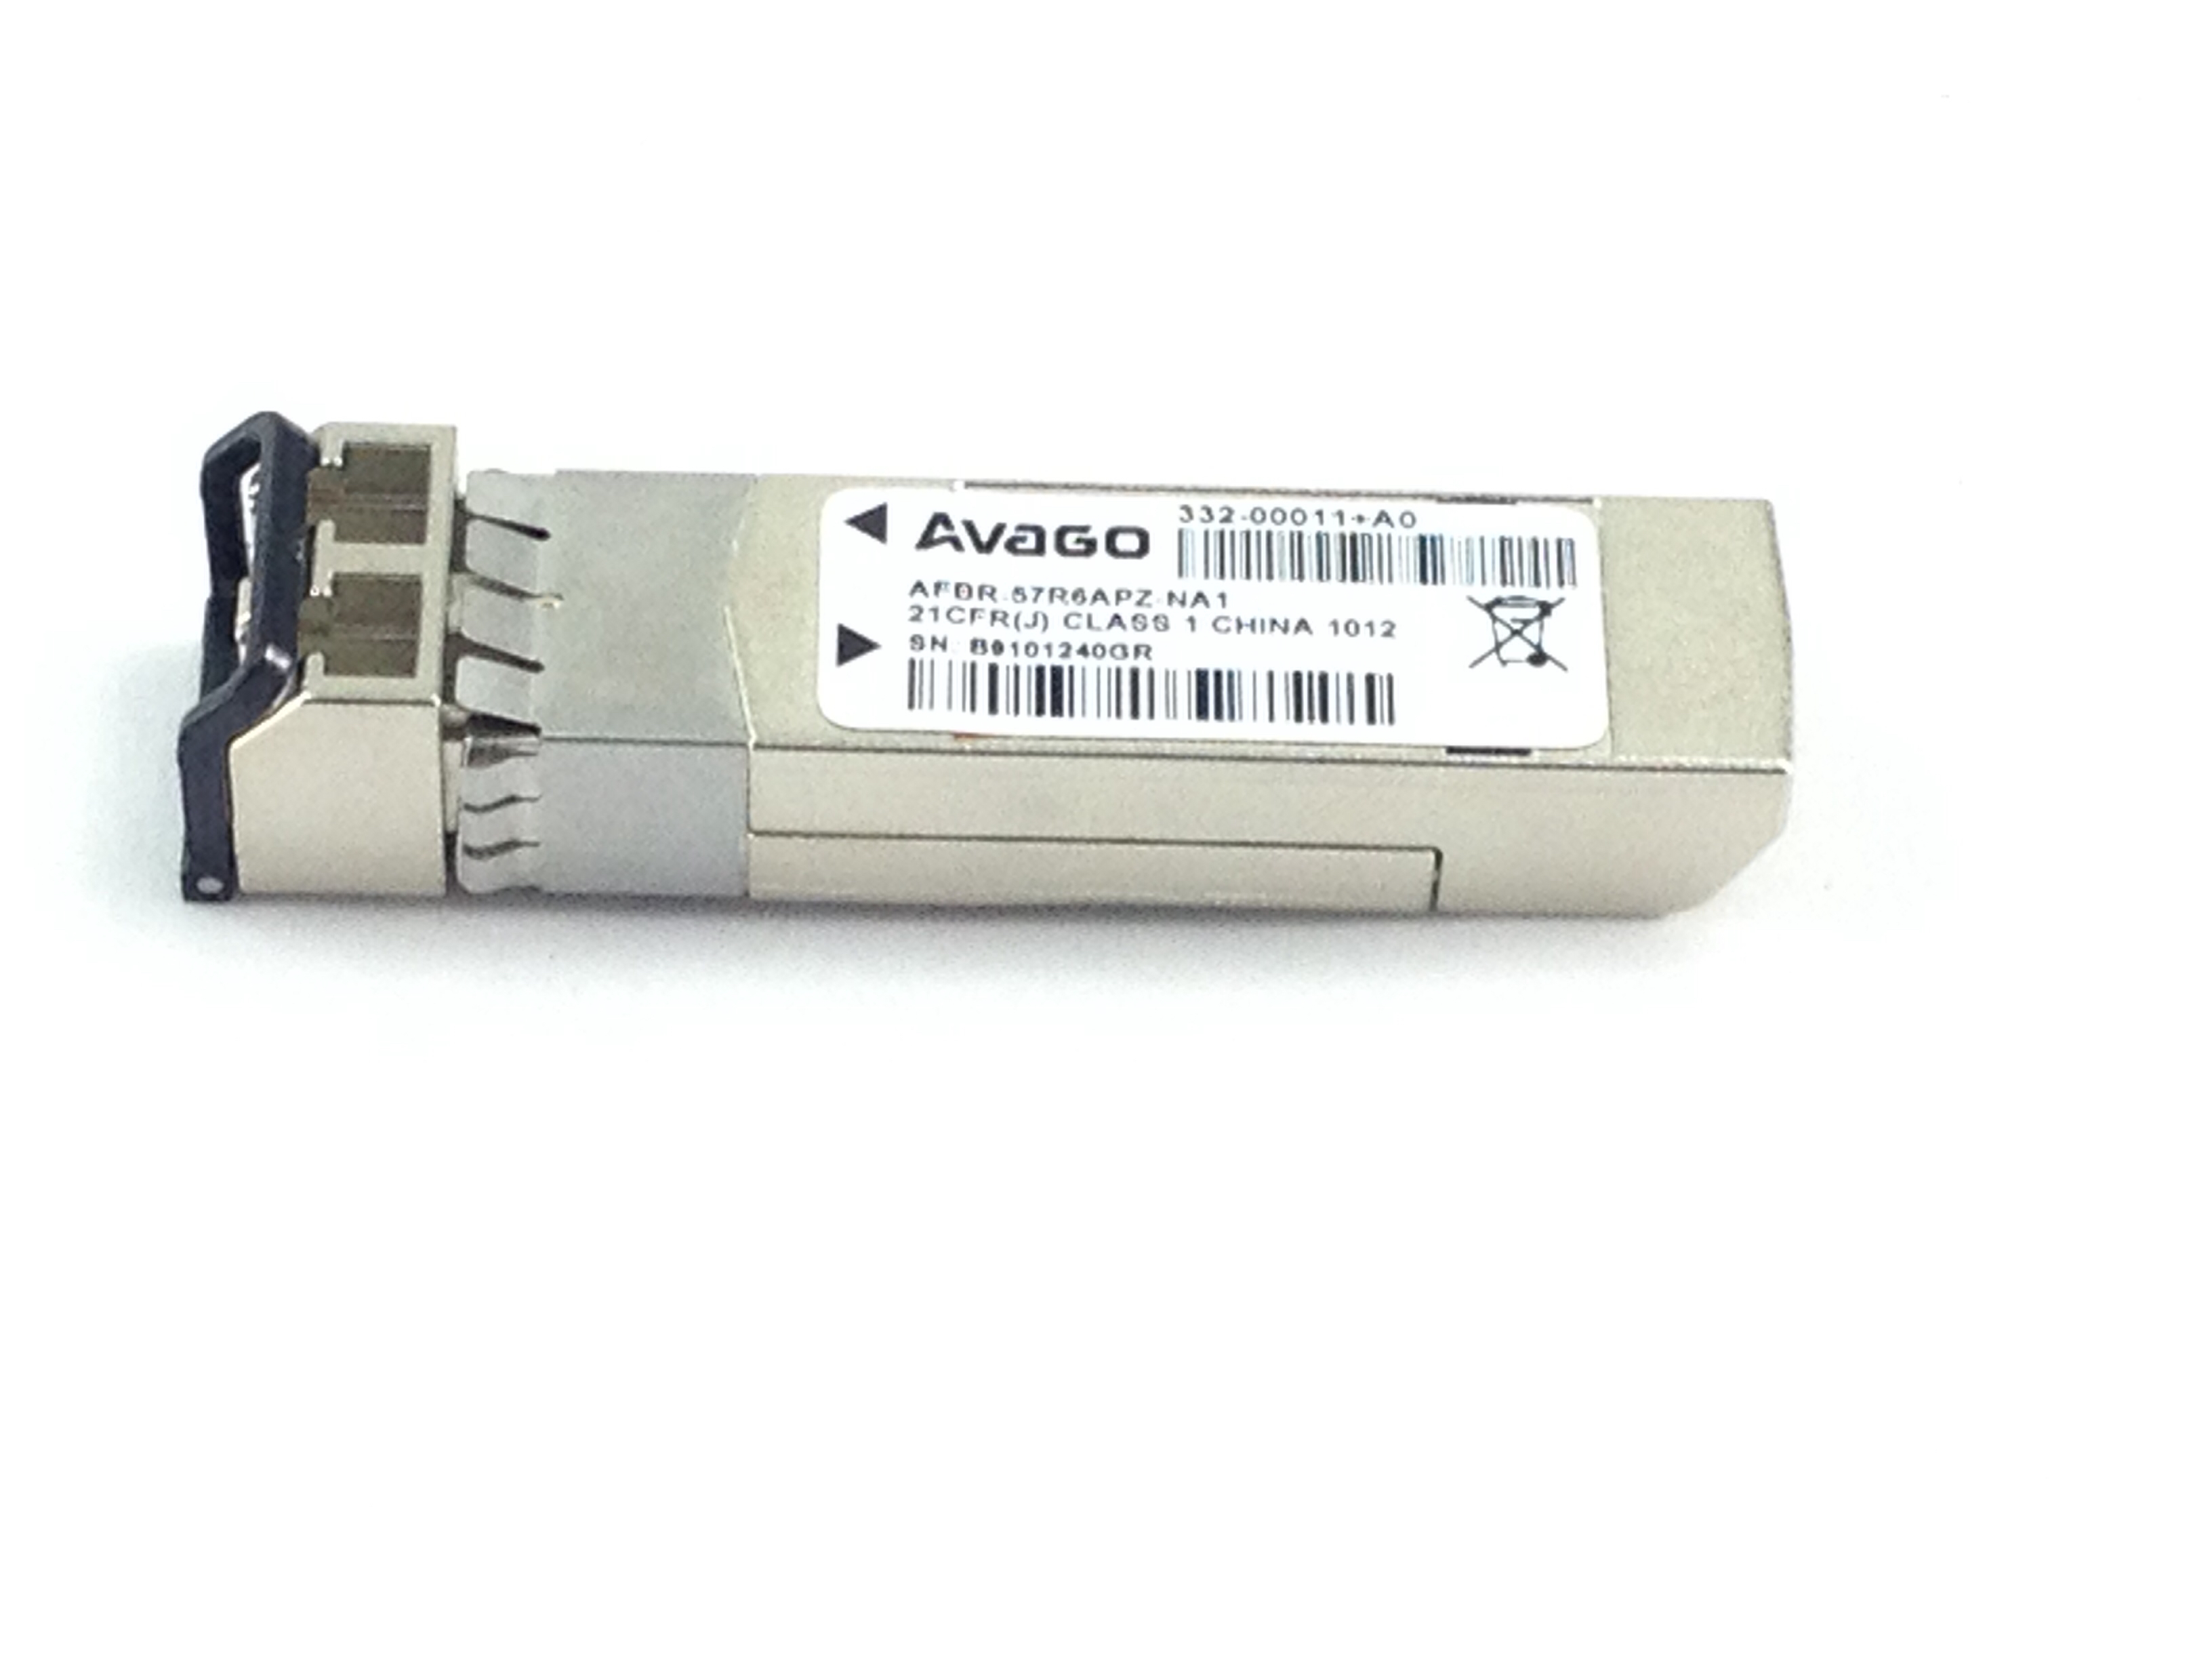 Avago 332-00011+A0 4GB SFP Fiber Module Transceiver (AFBR-57R6APZ-NA1)